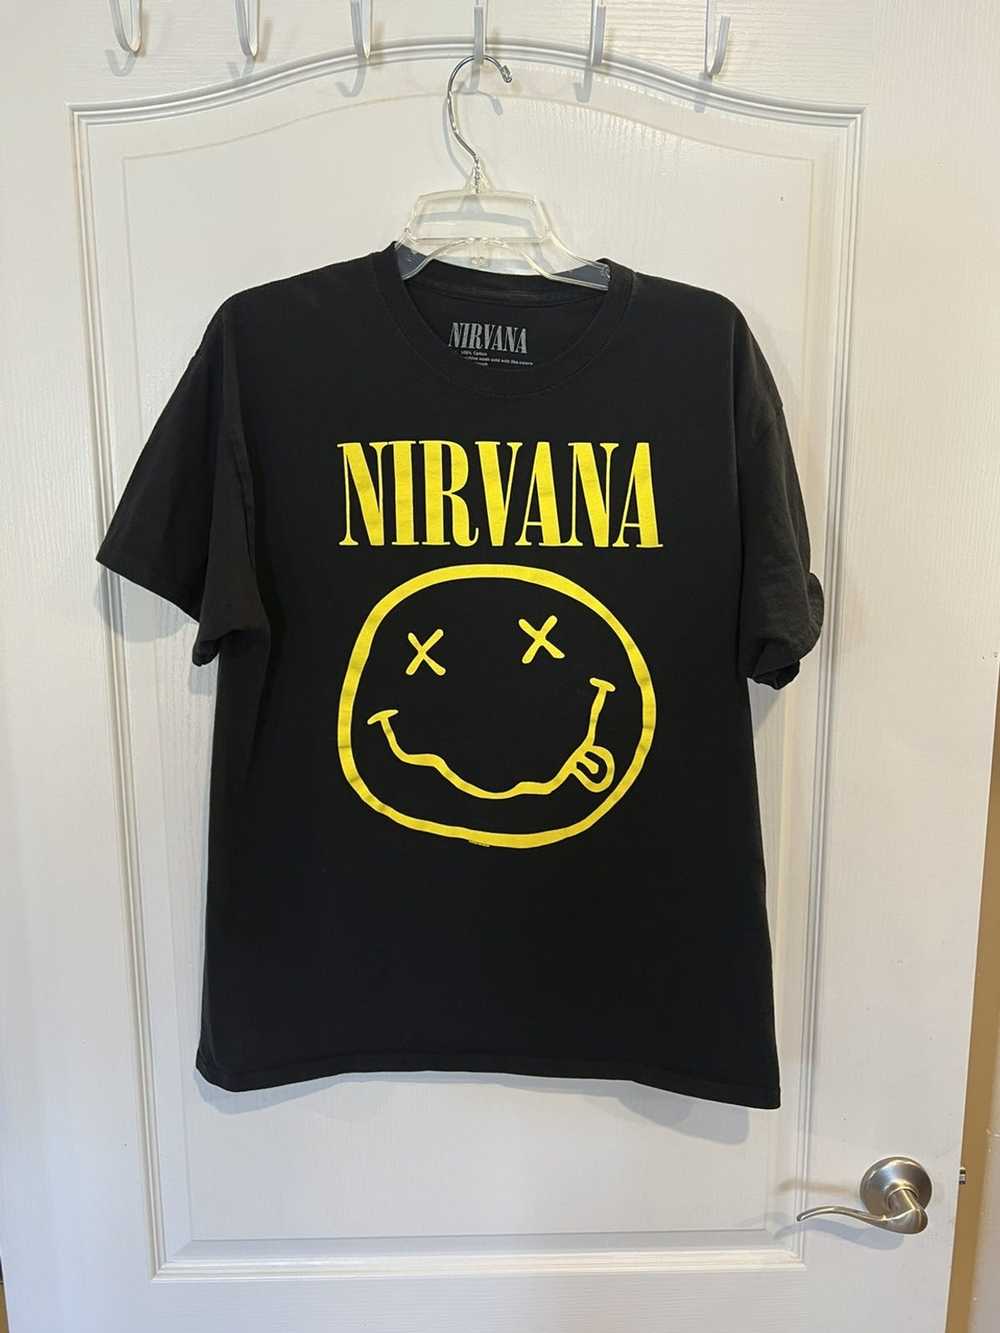 Nirvana Nirvana Smiley Face Shirt size large - image 1